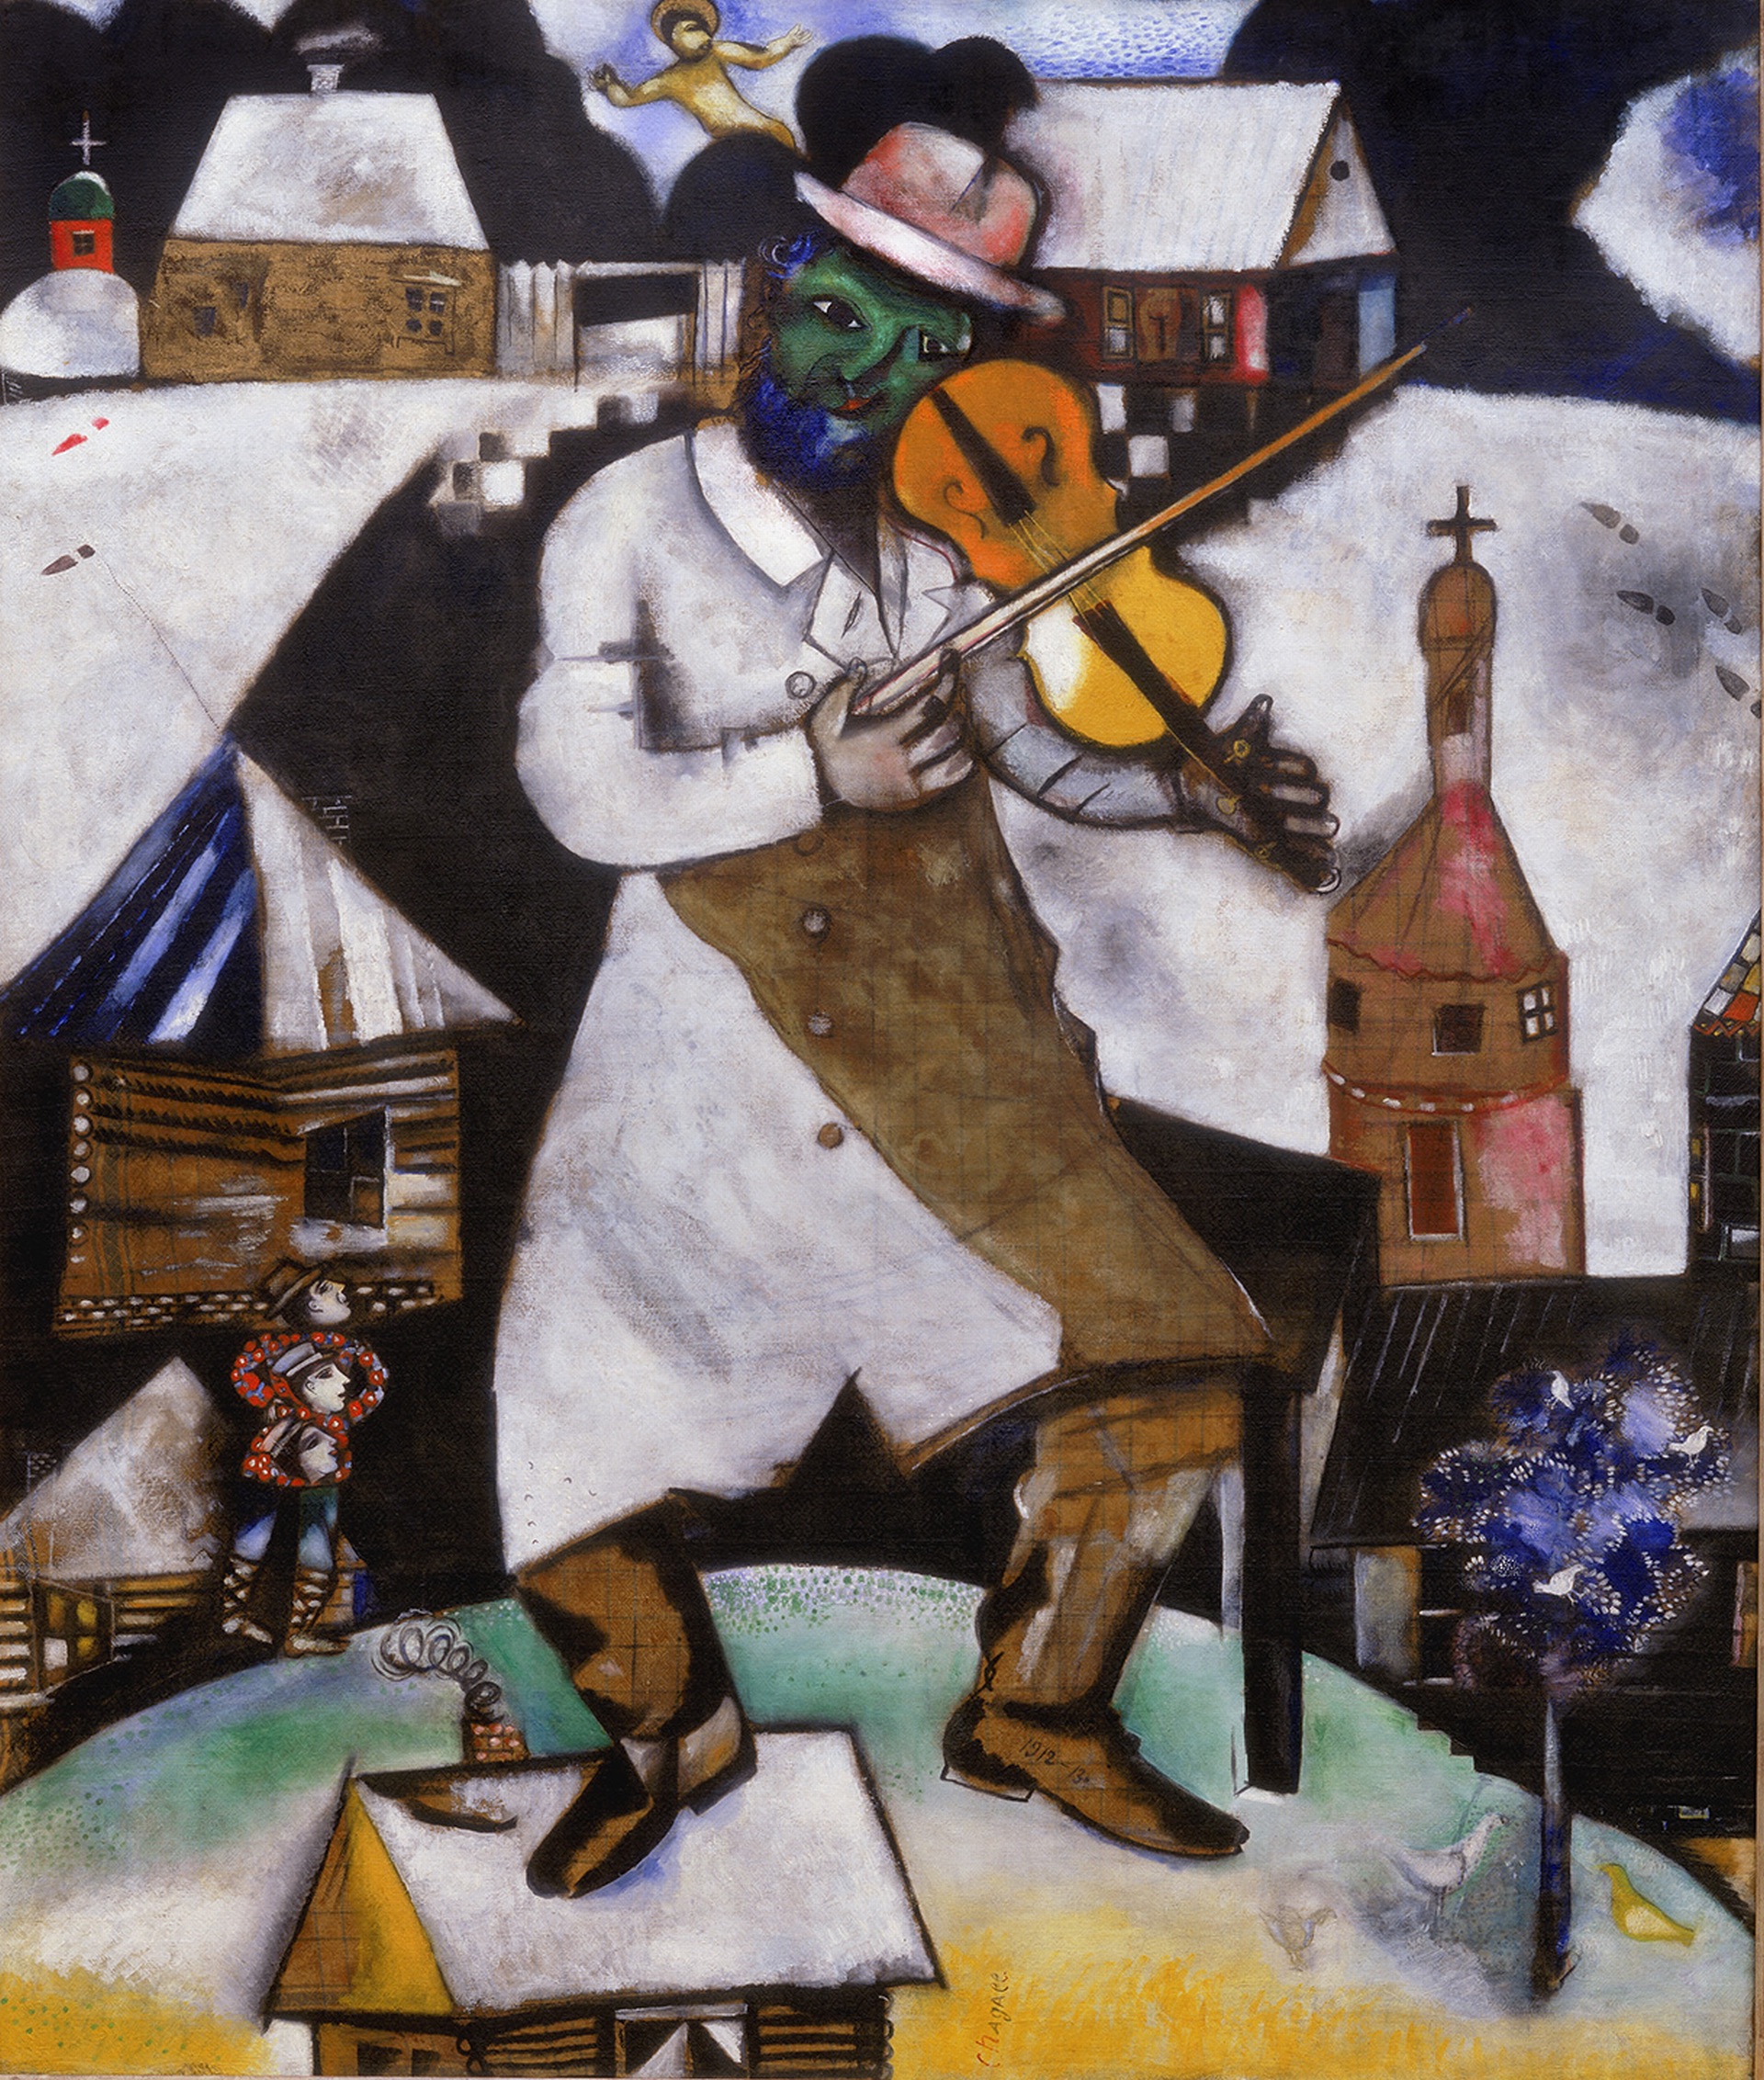 小提琴手 by 马克 夏加尔 - 1912-1913 - 196.5 x 166.5 cm 